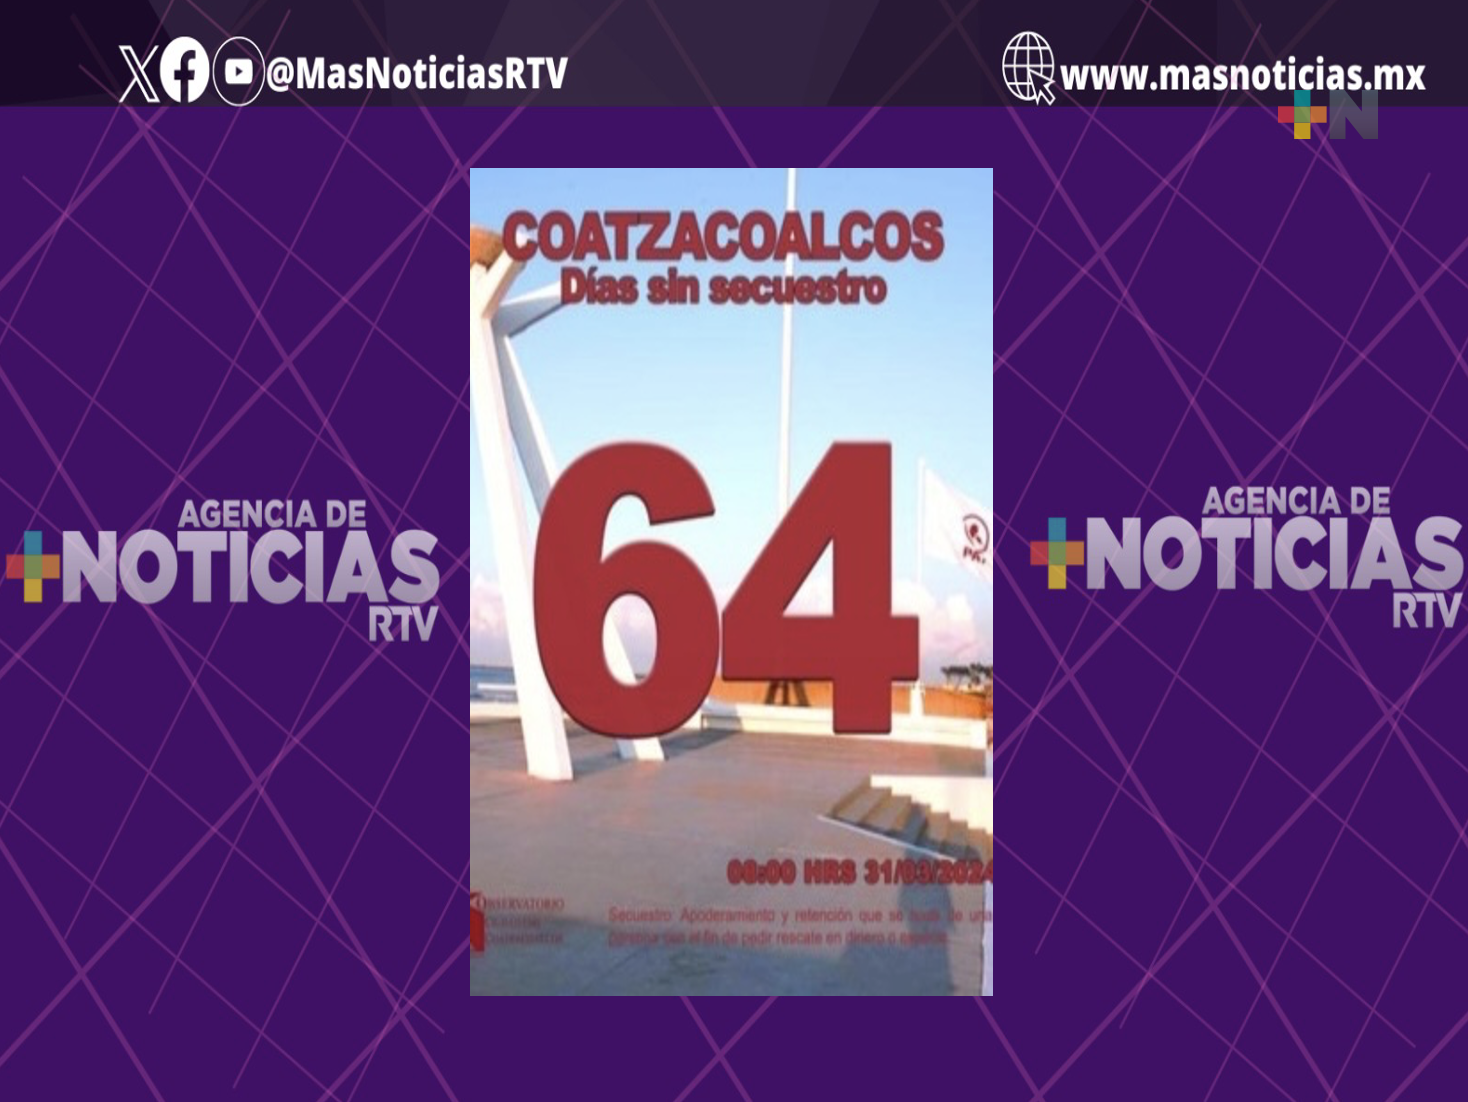 Coatzacoalcos suma 64 días sin secuestros, informa Observatorio Ciudadano